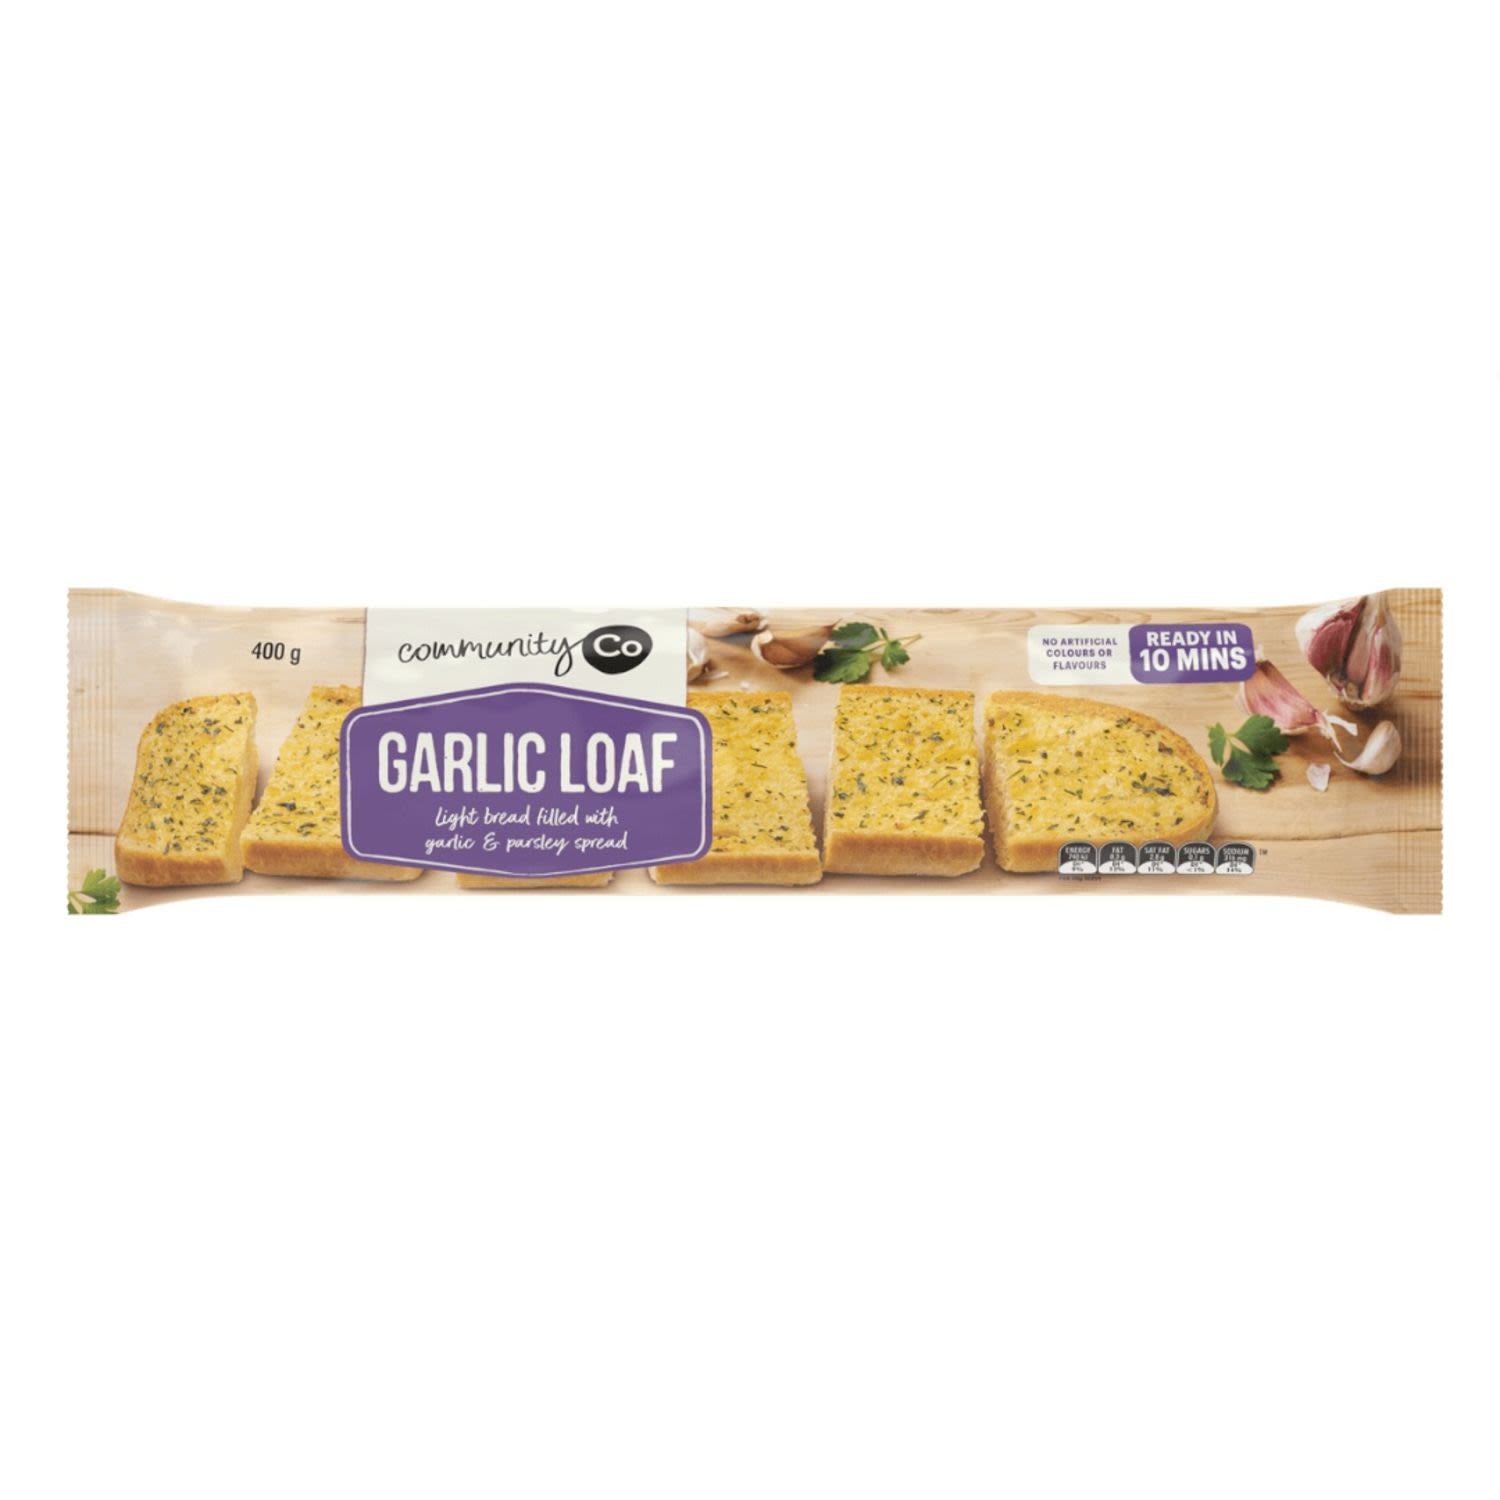 Community Co Garlic Loaf 400g